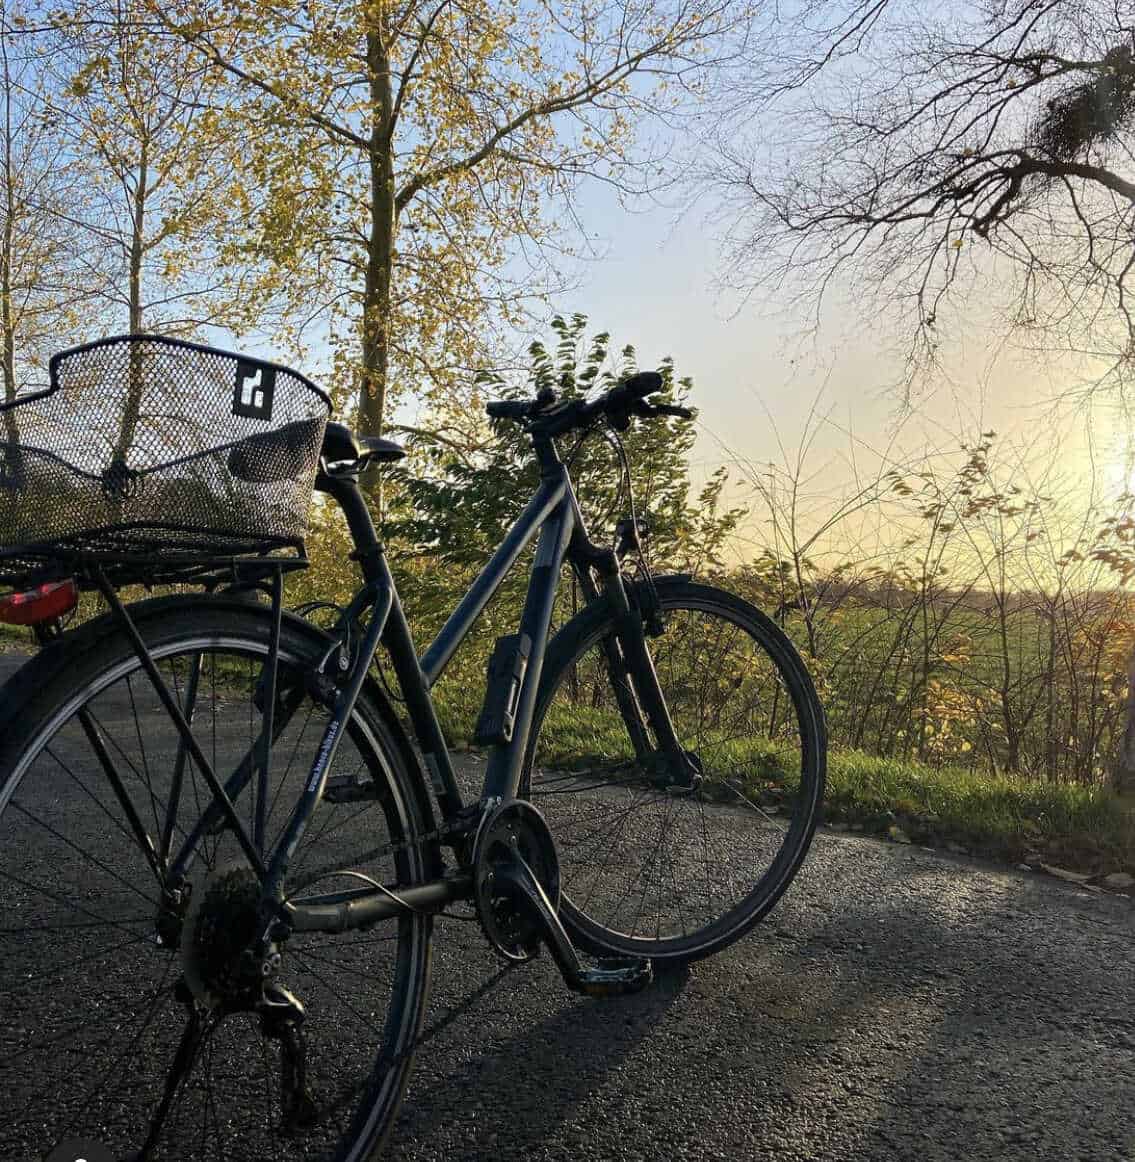 Fahrrad in herbstlicher Umgebung